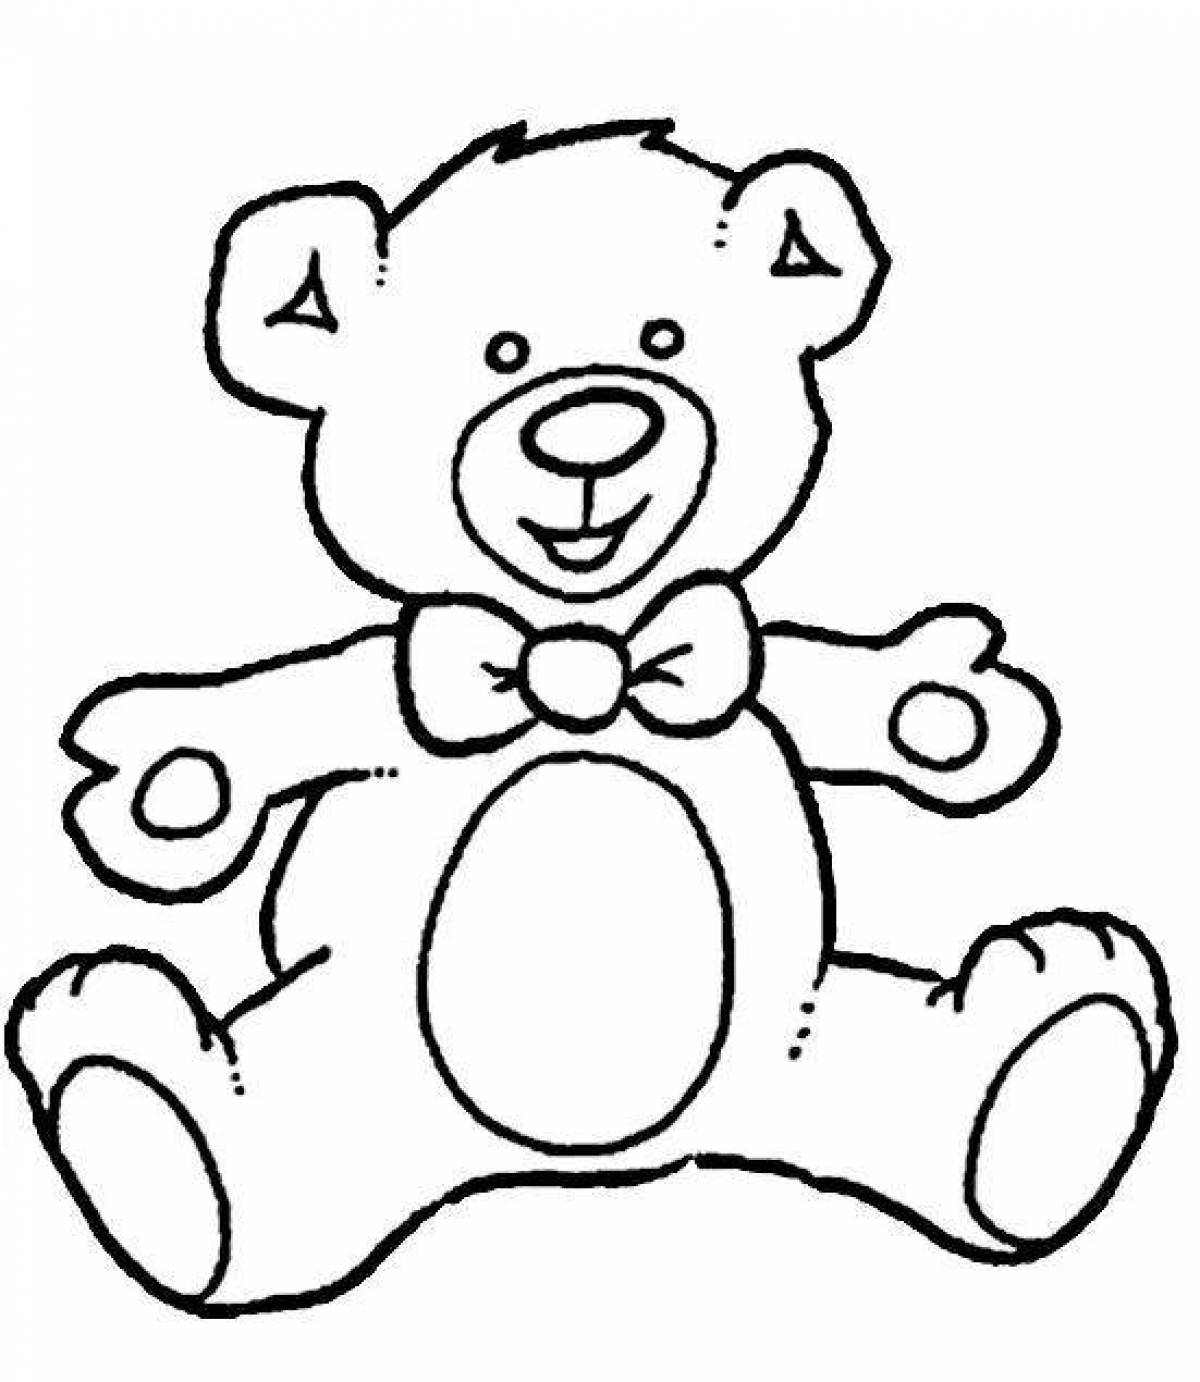 Выдающаяся раскраска медведя для детей 2-3 лет